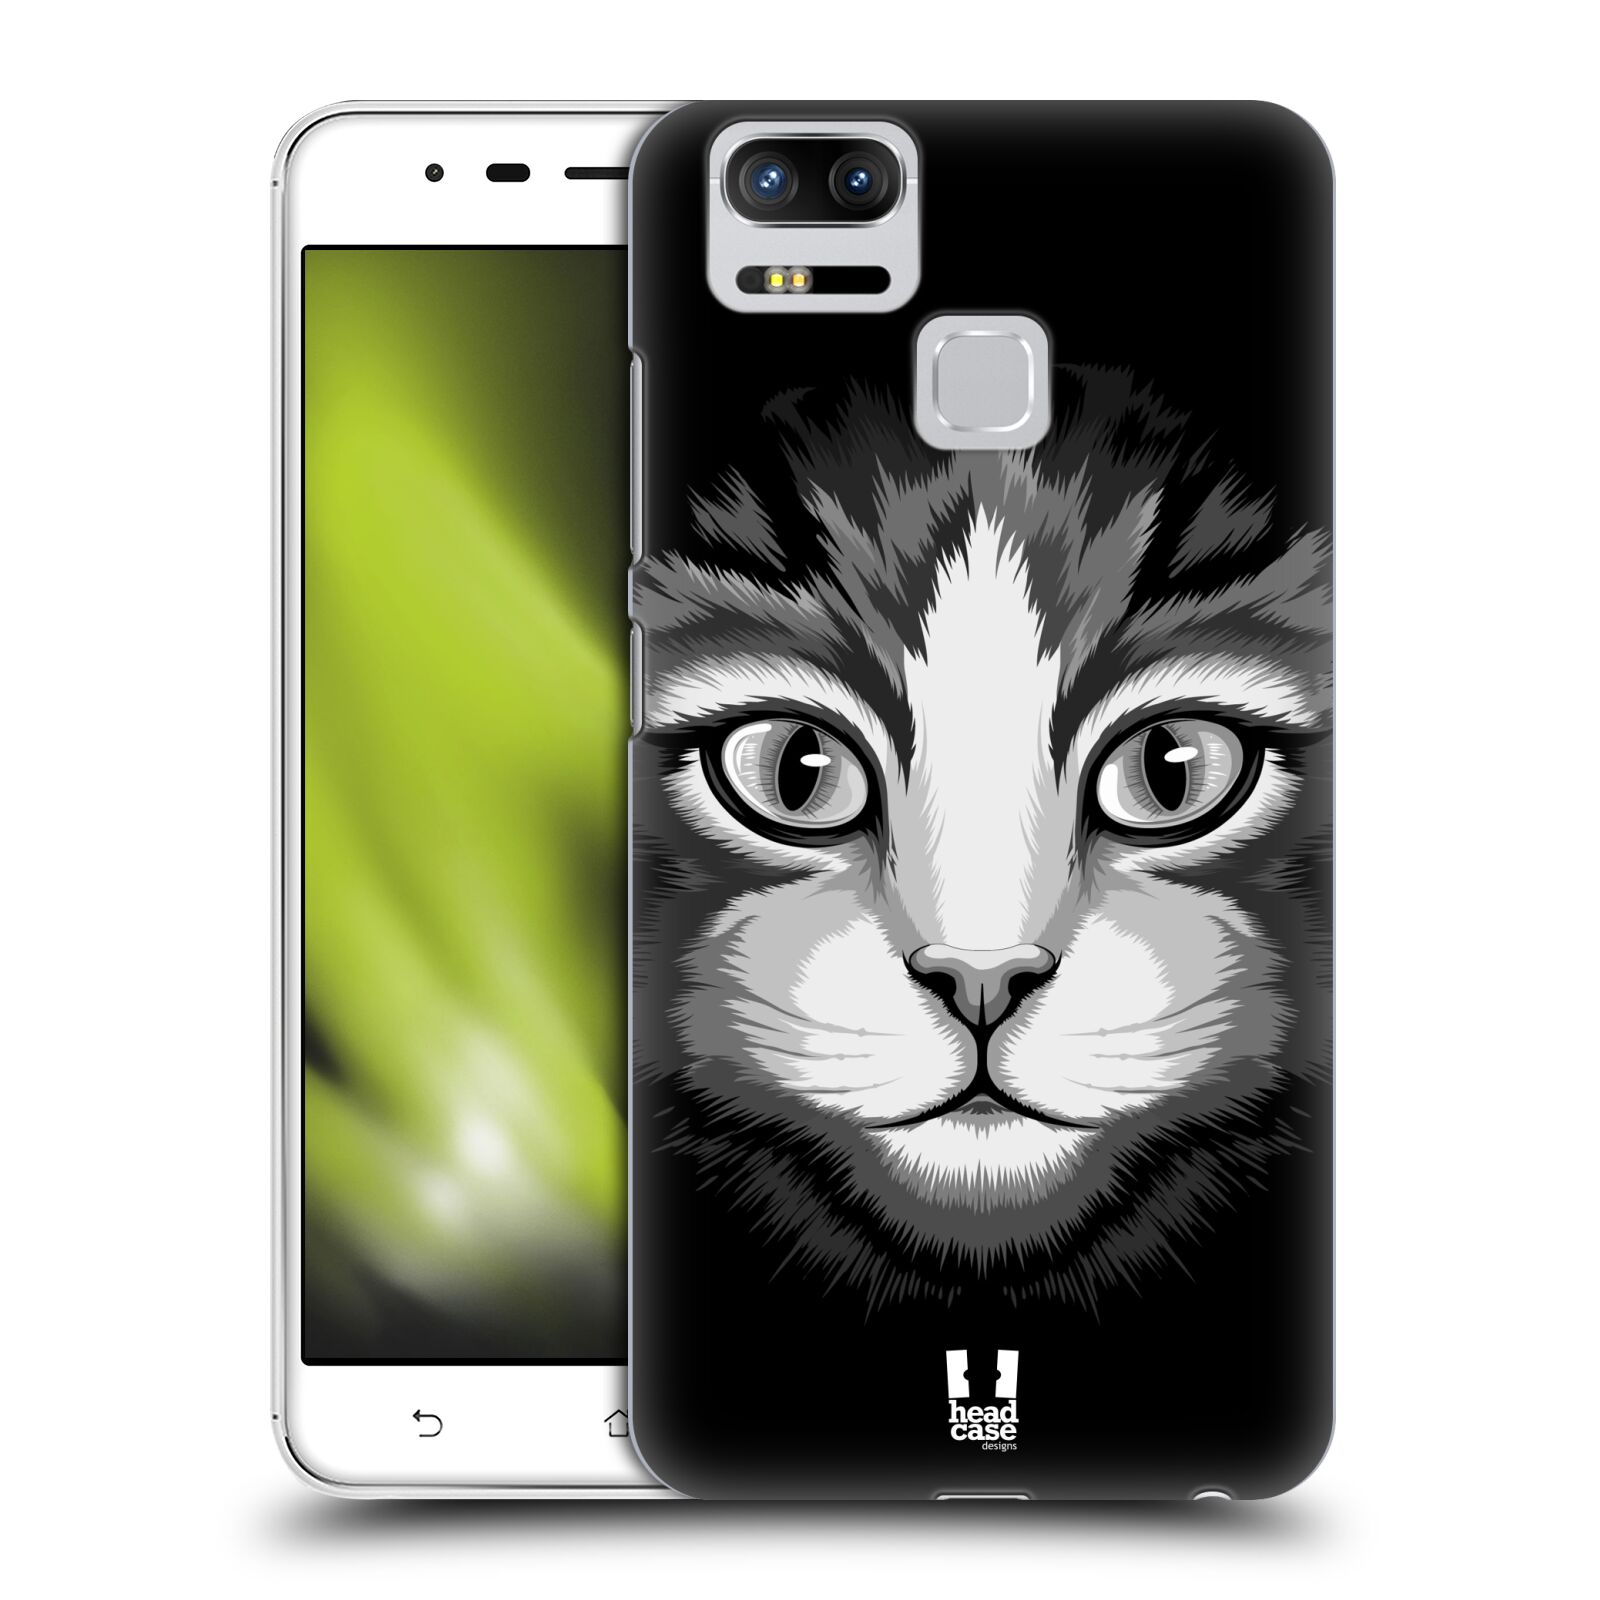 HEAD CASE plastový obal na mobil Asus Zenfone 3 Zoom ZE553KL vzor Zvíře kreslená tvář 2 kočička